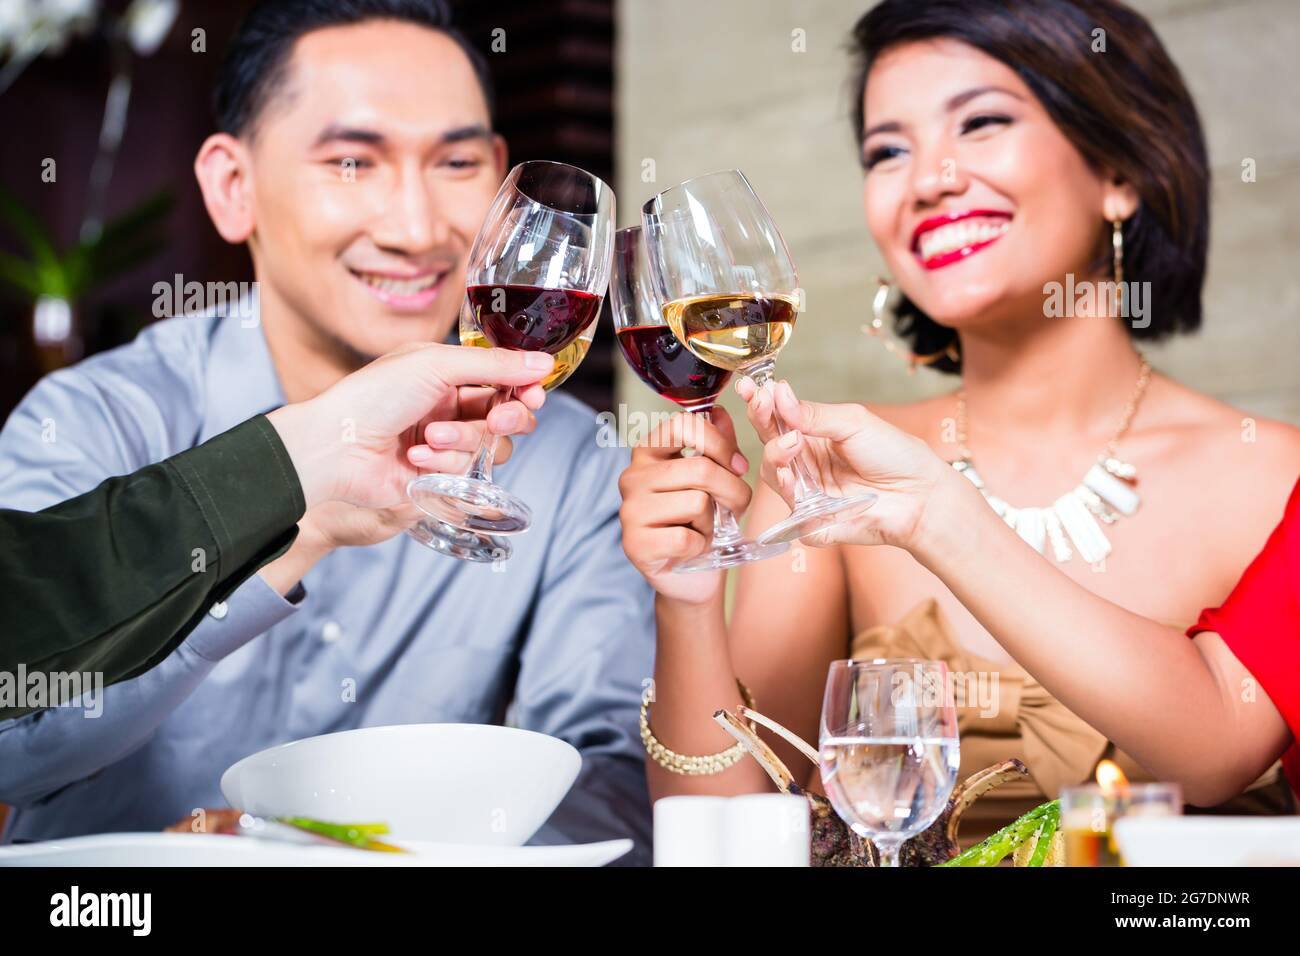 Les amis de l'Asie, deux couples, dîner dans un restaurant de fantaisie manger de la bonne nourriture et de boire du vin Banque D'Images